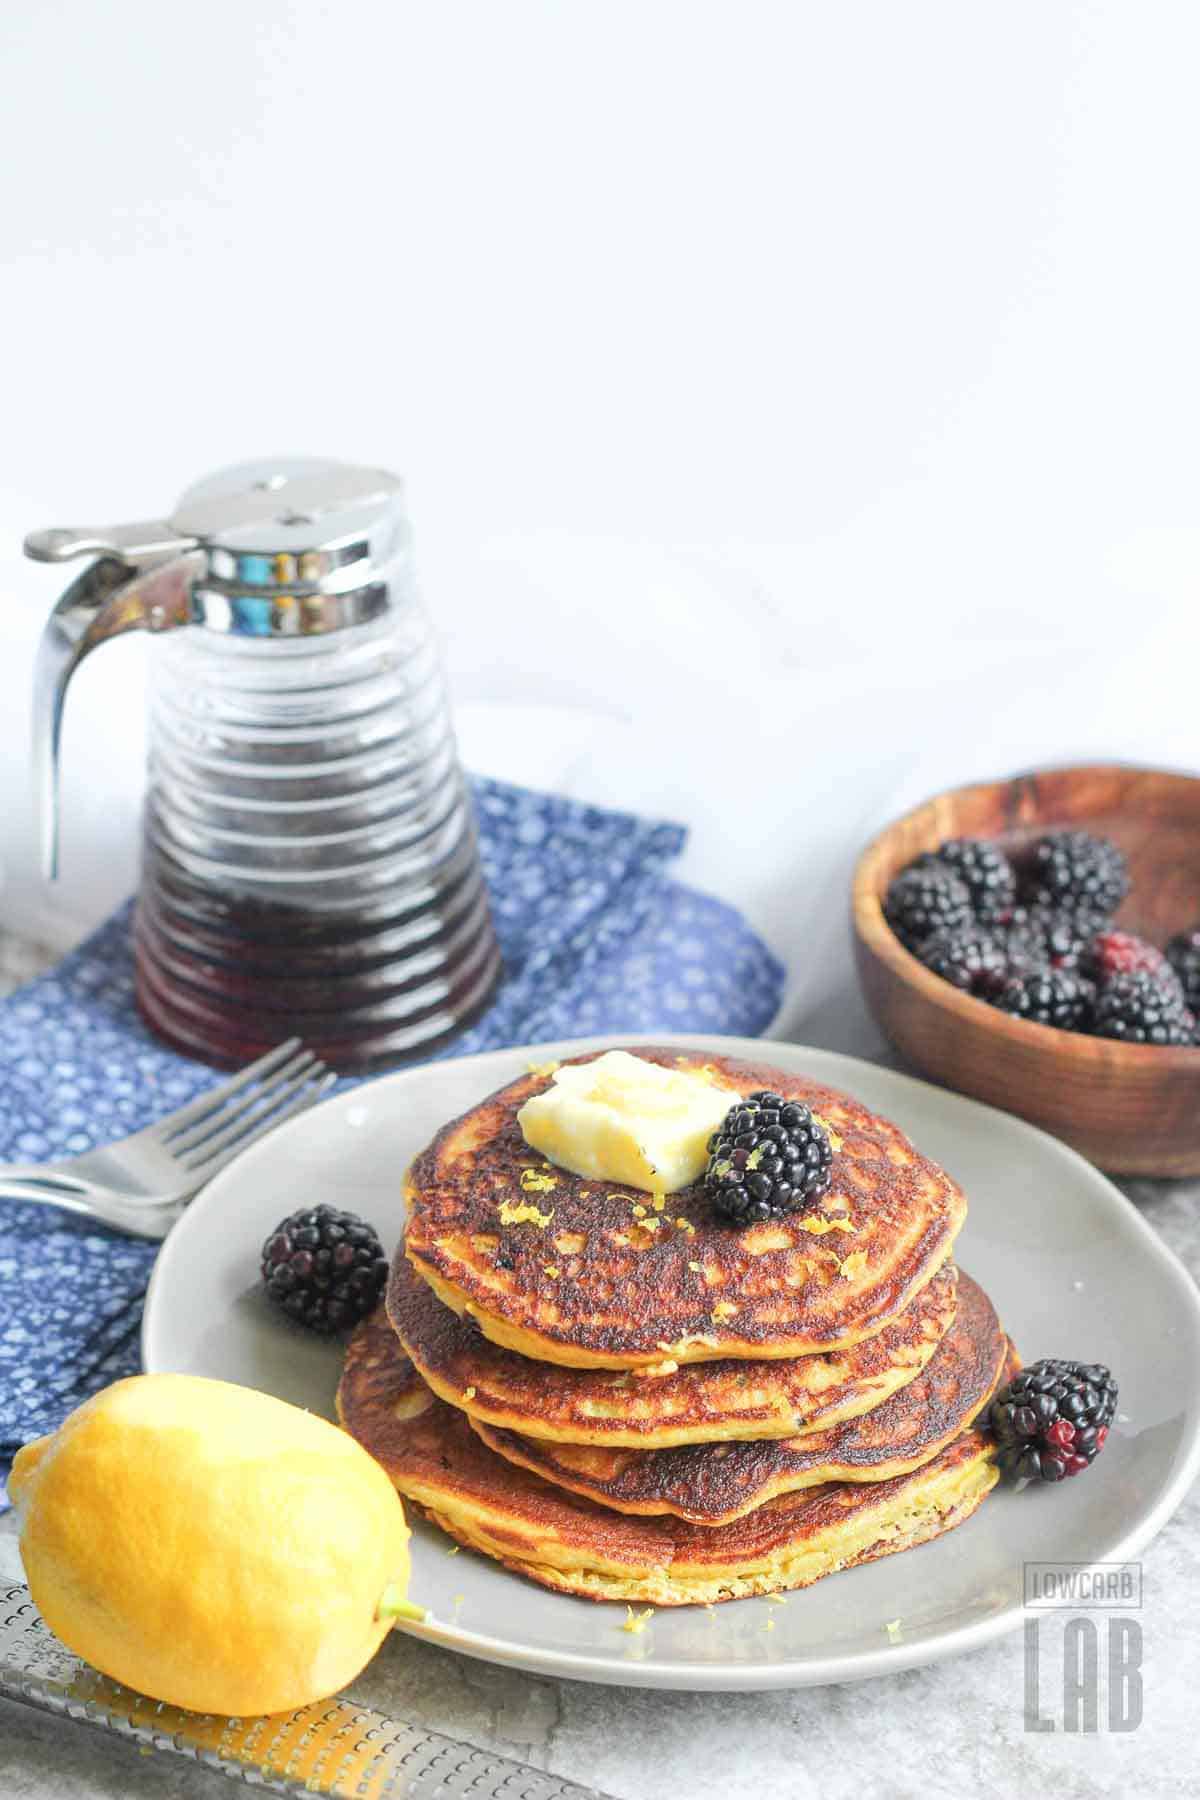 Low carb blackberry pancakes recipe with lemon zest